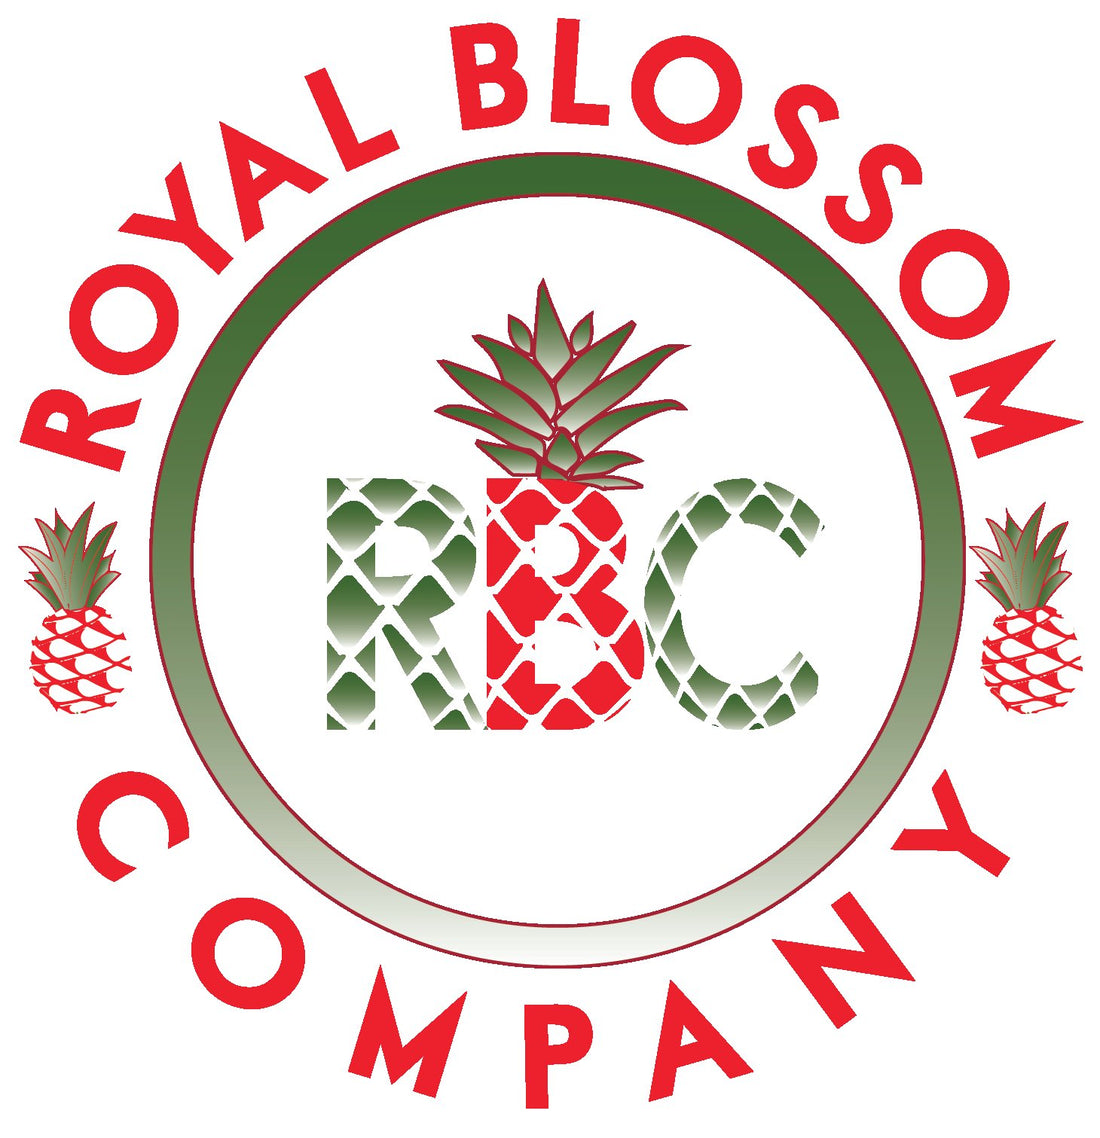 Royal Blossom Company